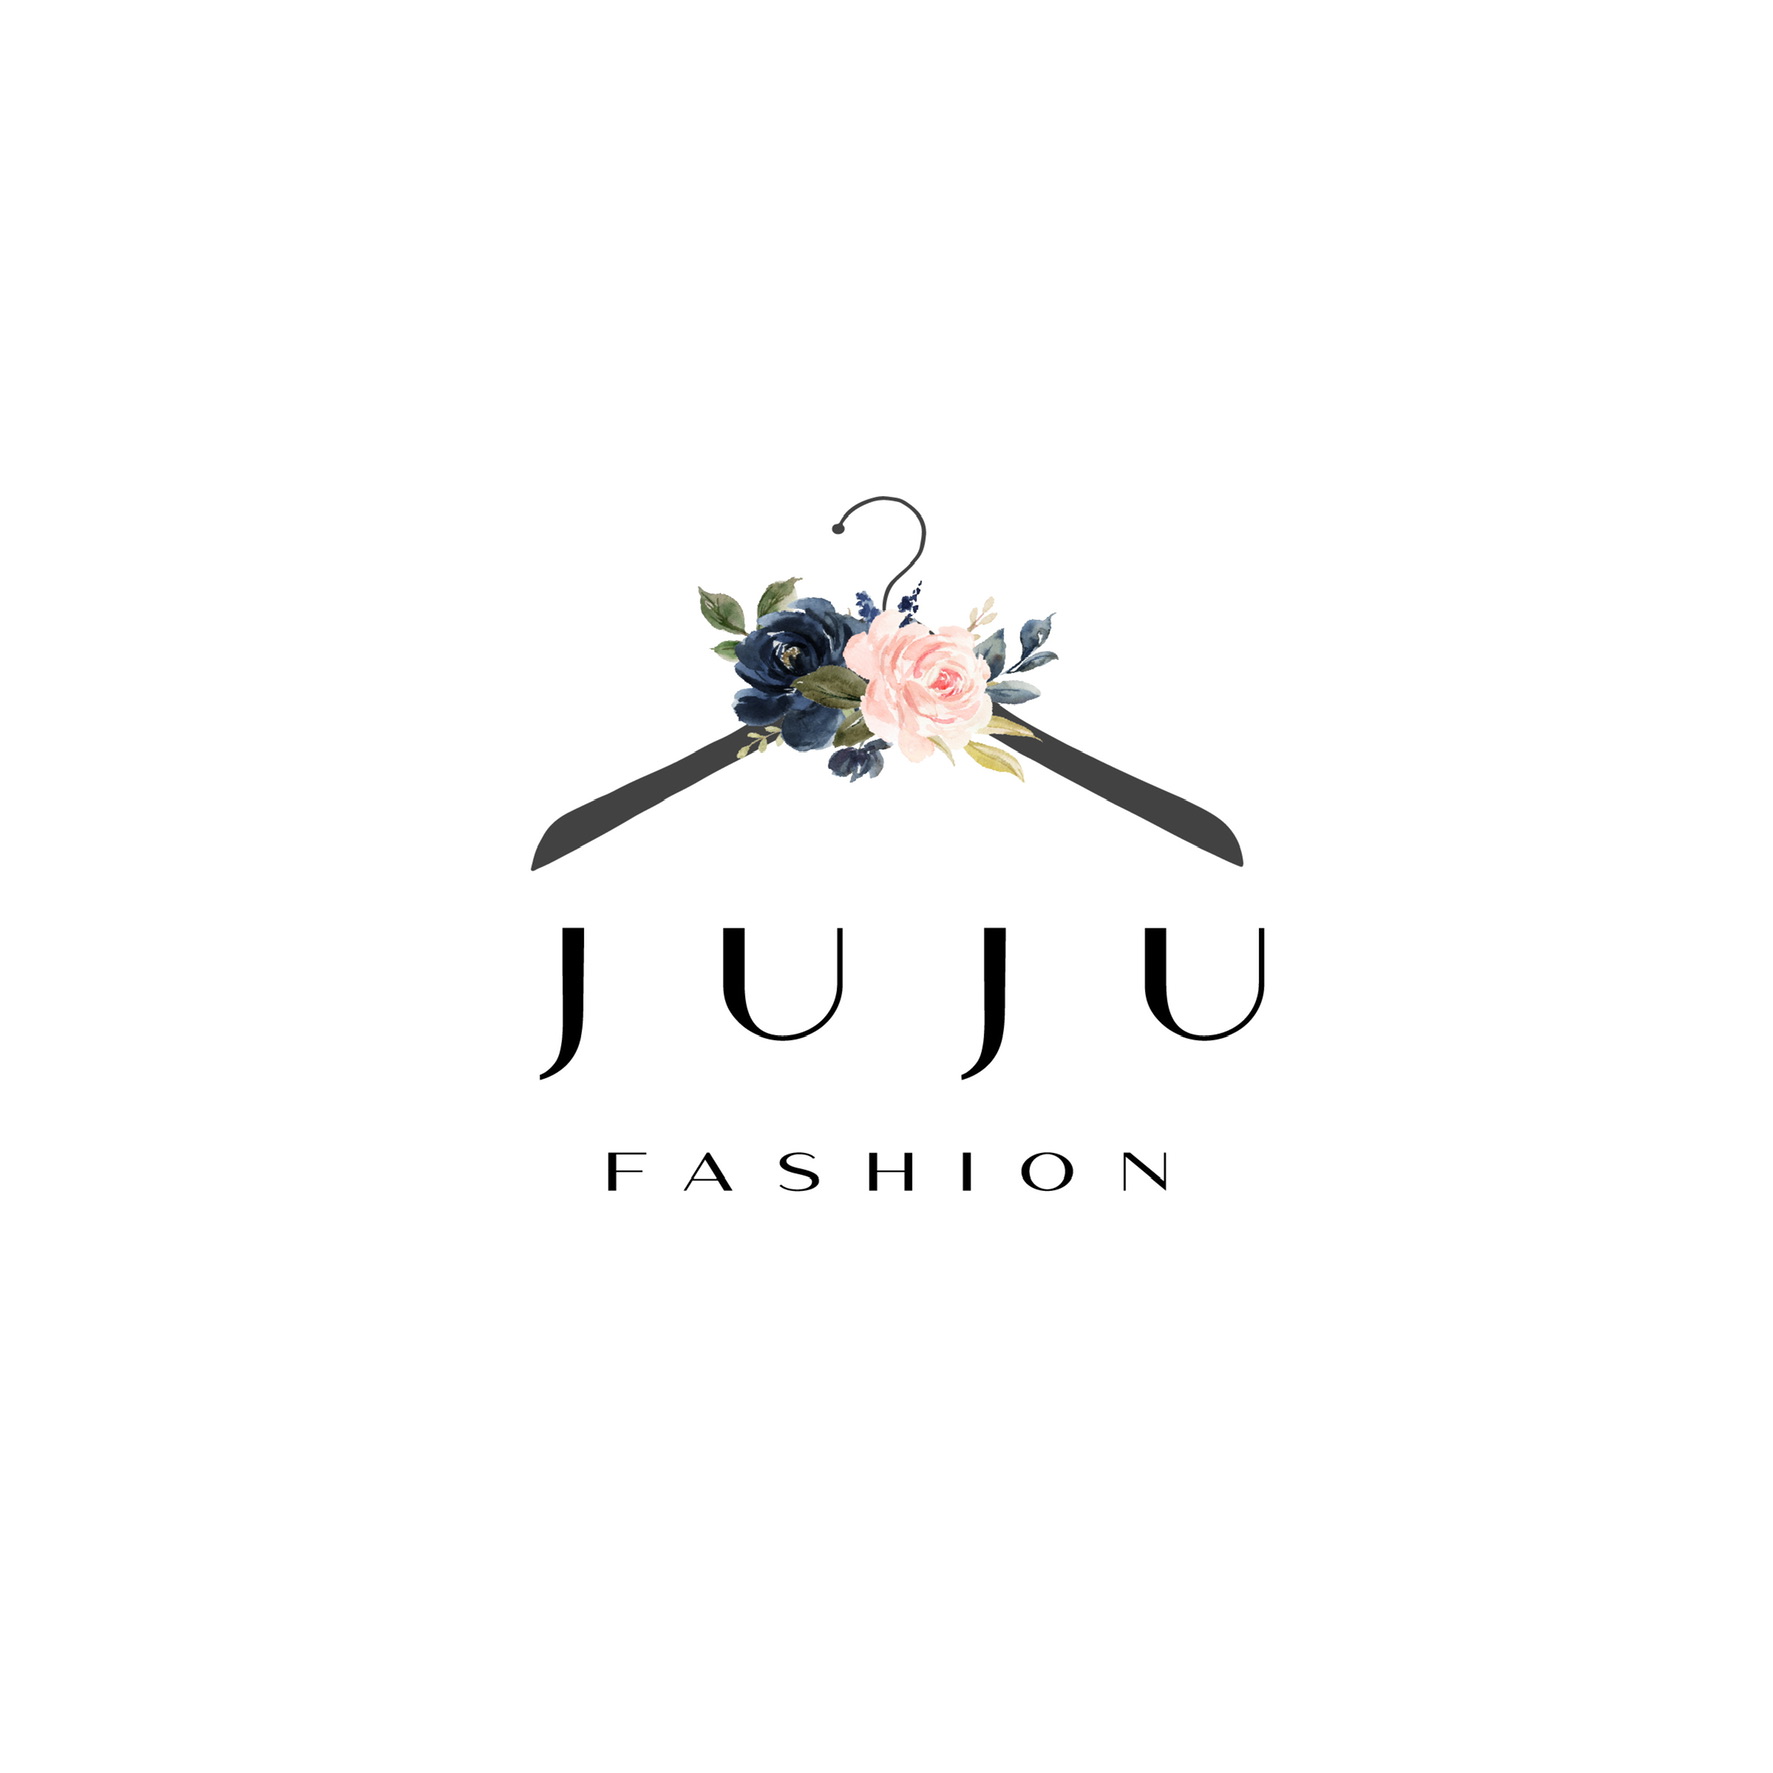 JuJu Fashion